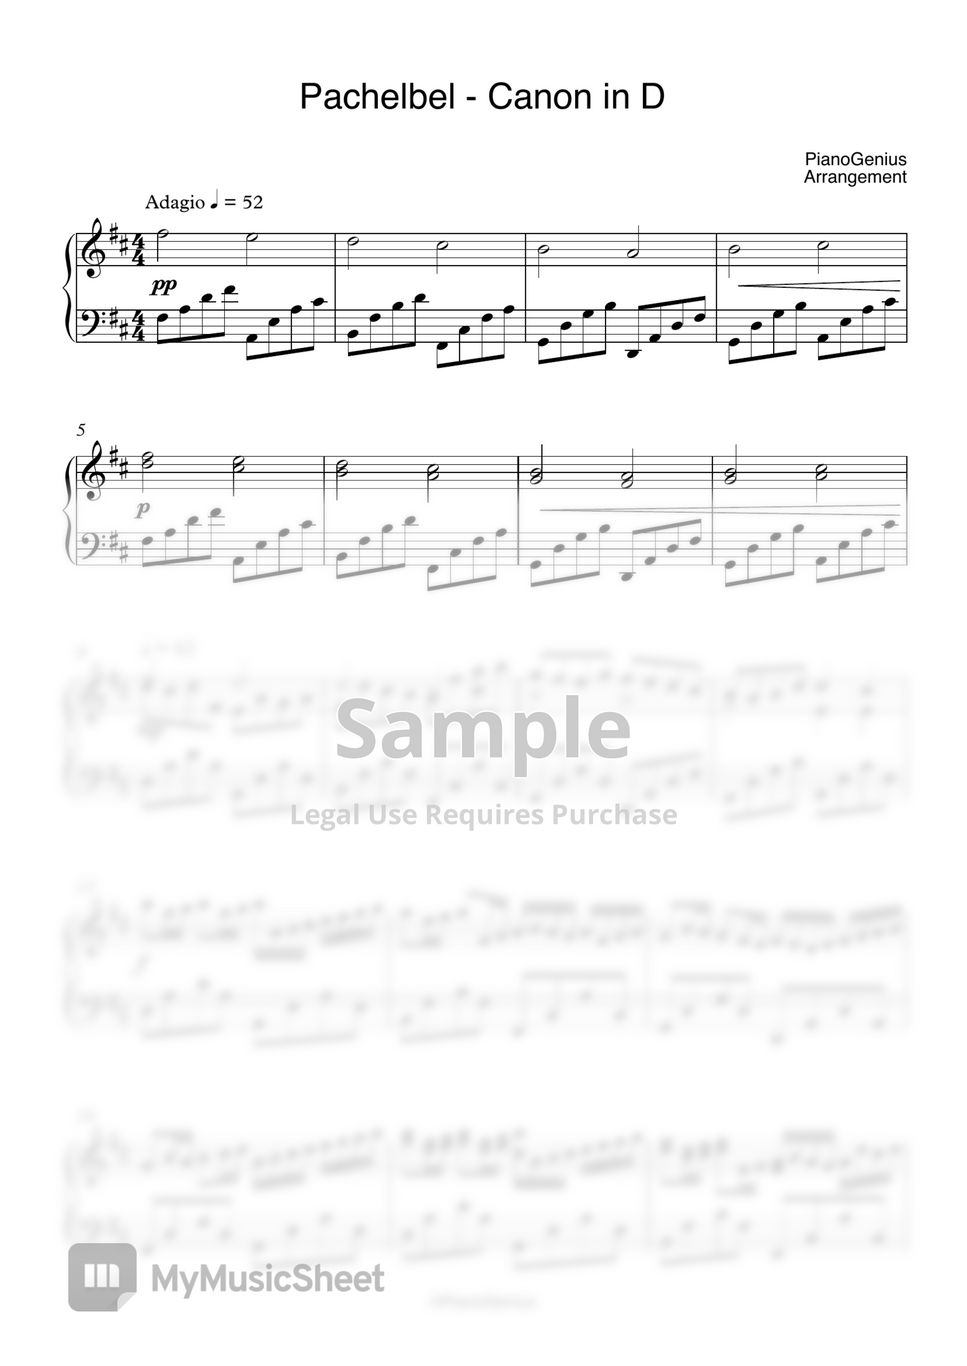 Pachelbel - Canon in D by PianoGenius